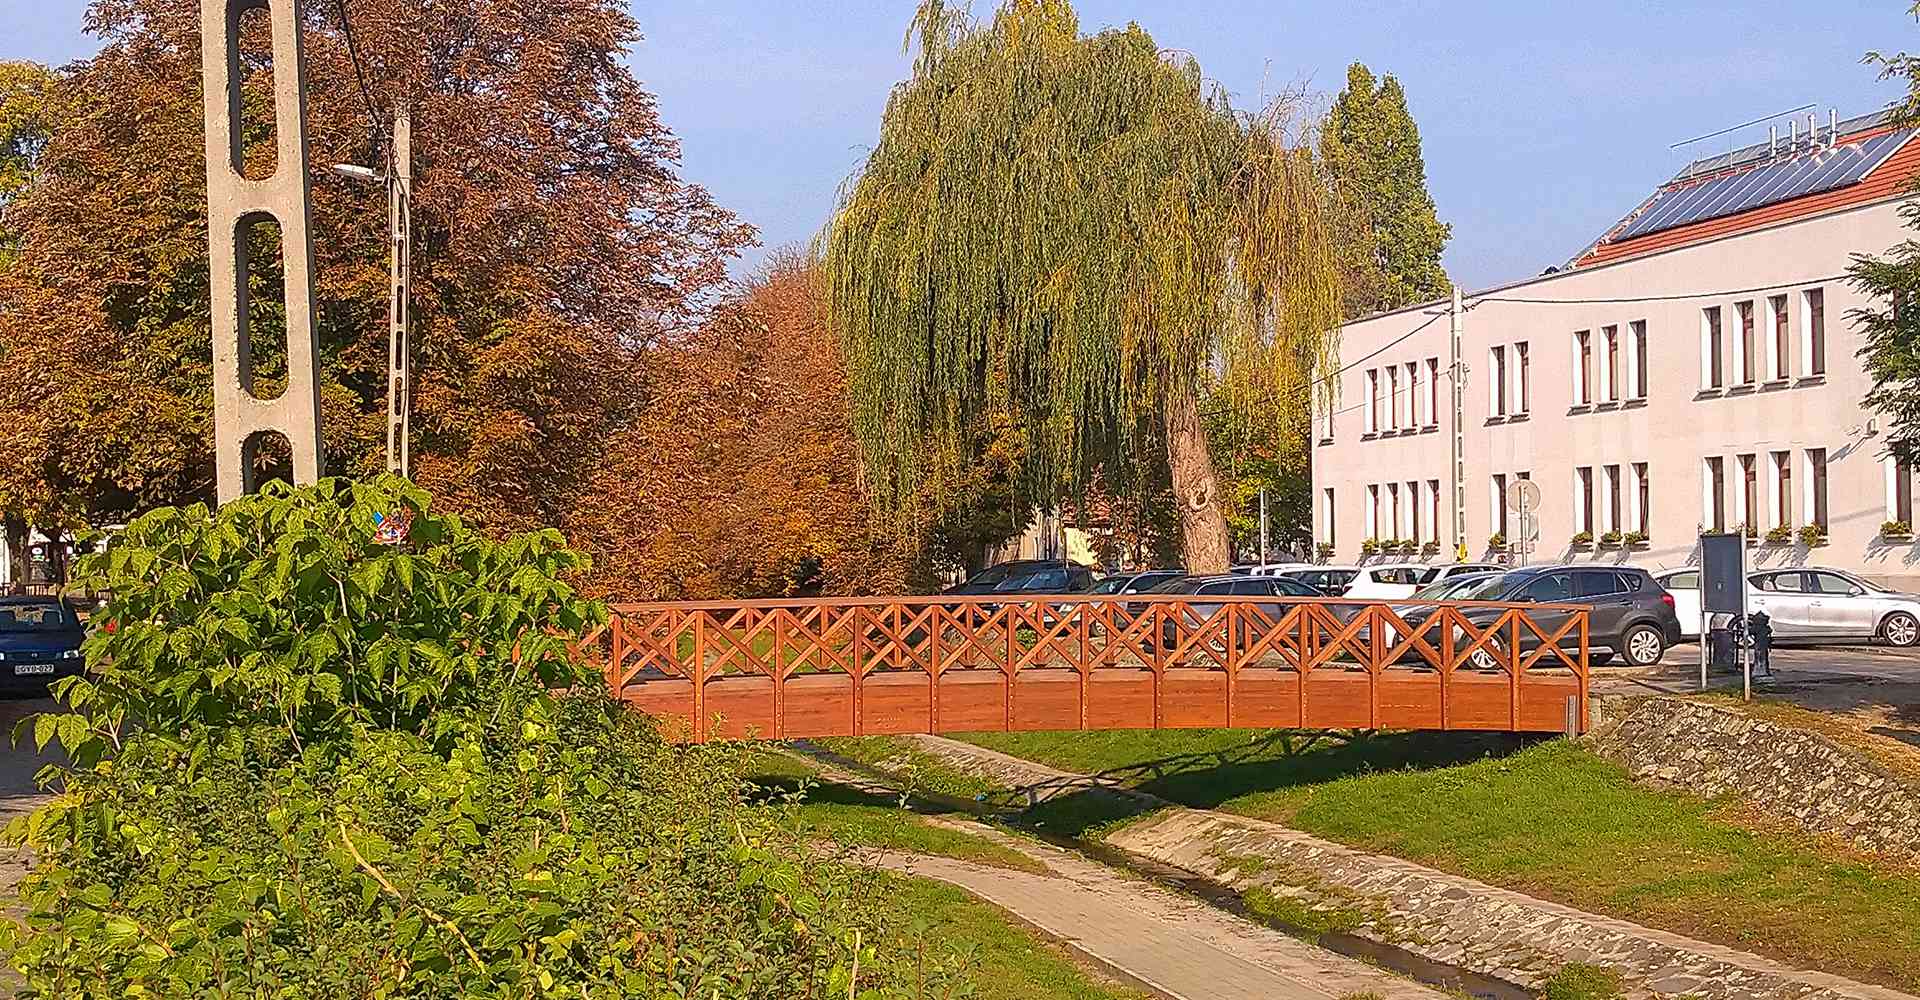 Szentendre_Őri-Art_Gallery_N5-Wooden_bridges